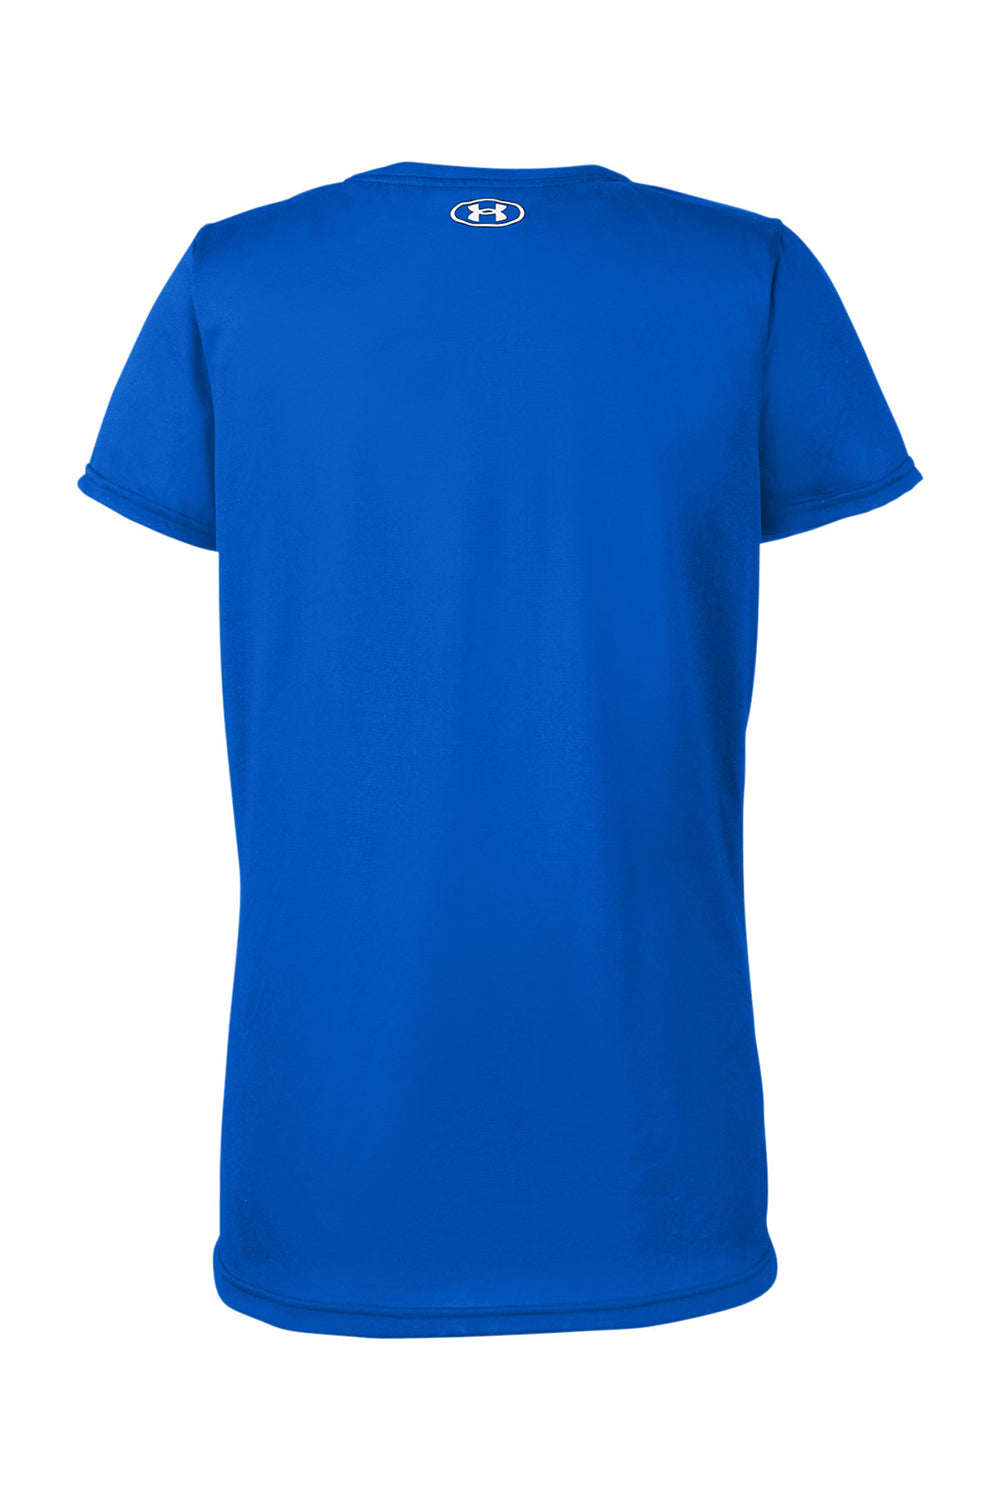 Under Armour 1376847 Womens Team Tech Moisture Wicking Short Sleeve Crewneck T-Shirt Royal Blue Flat Back